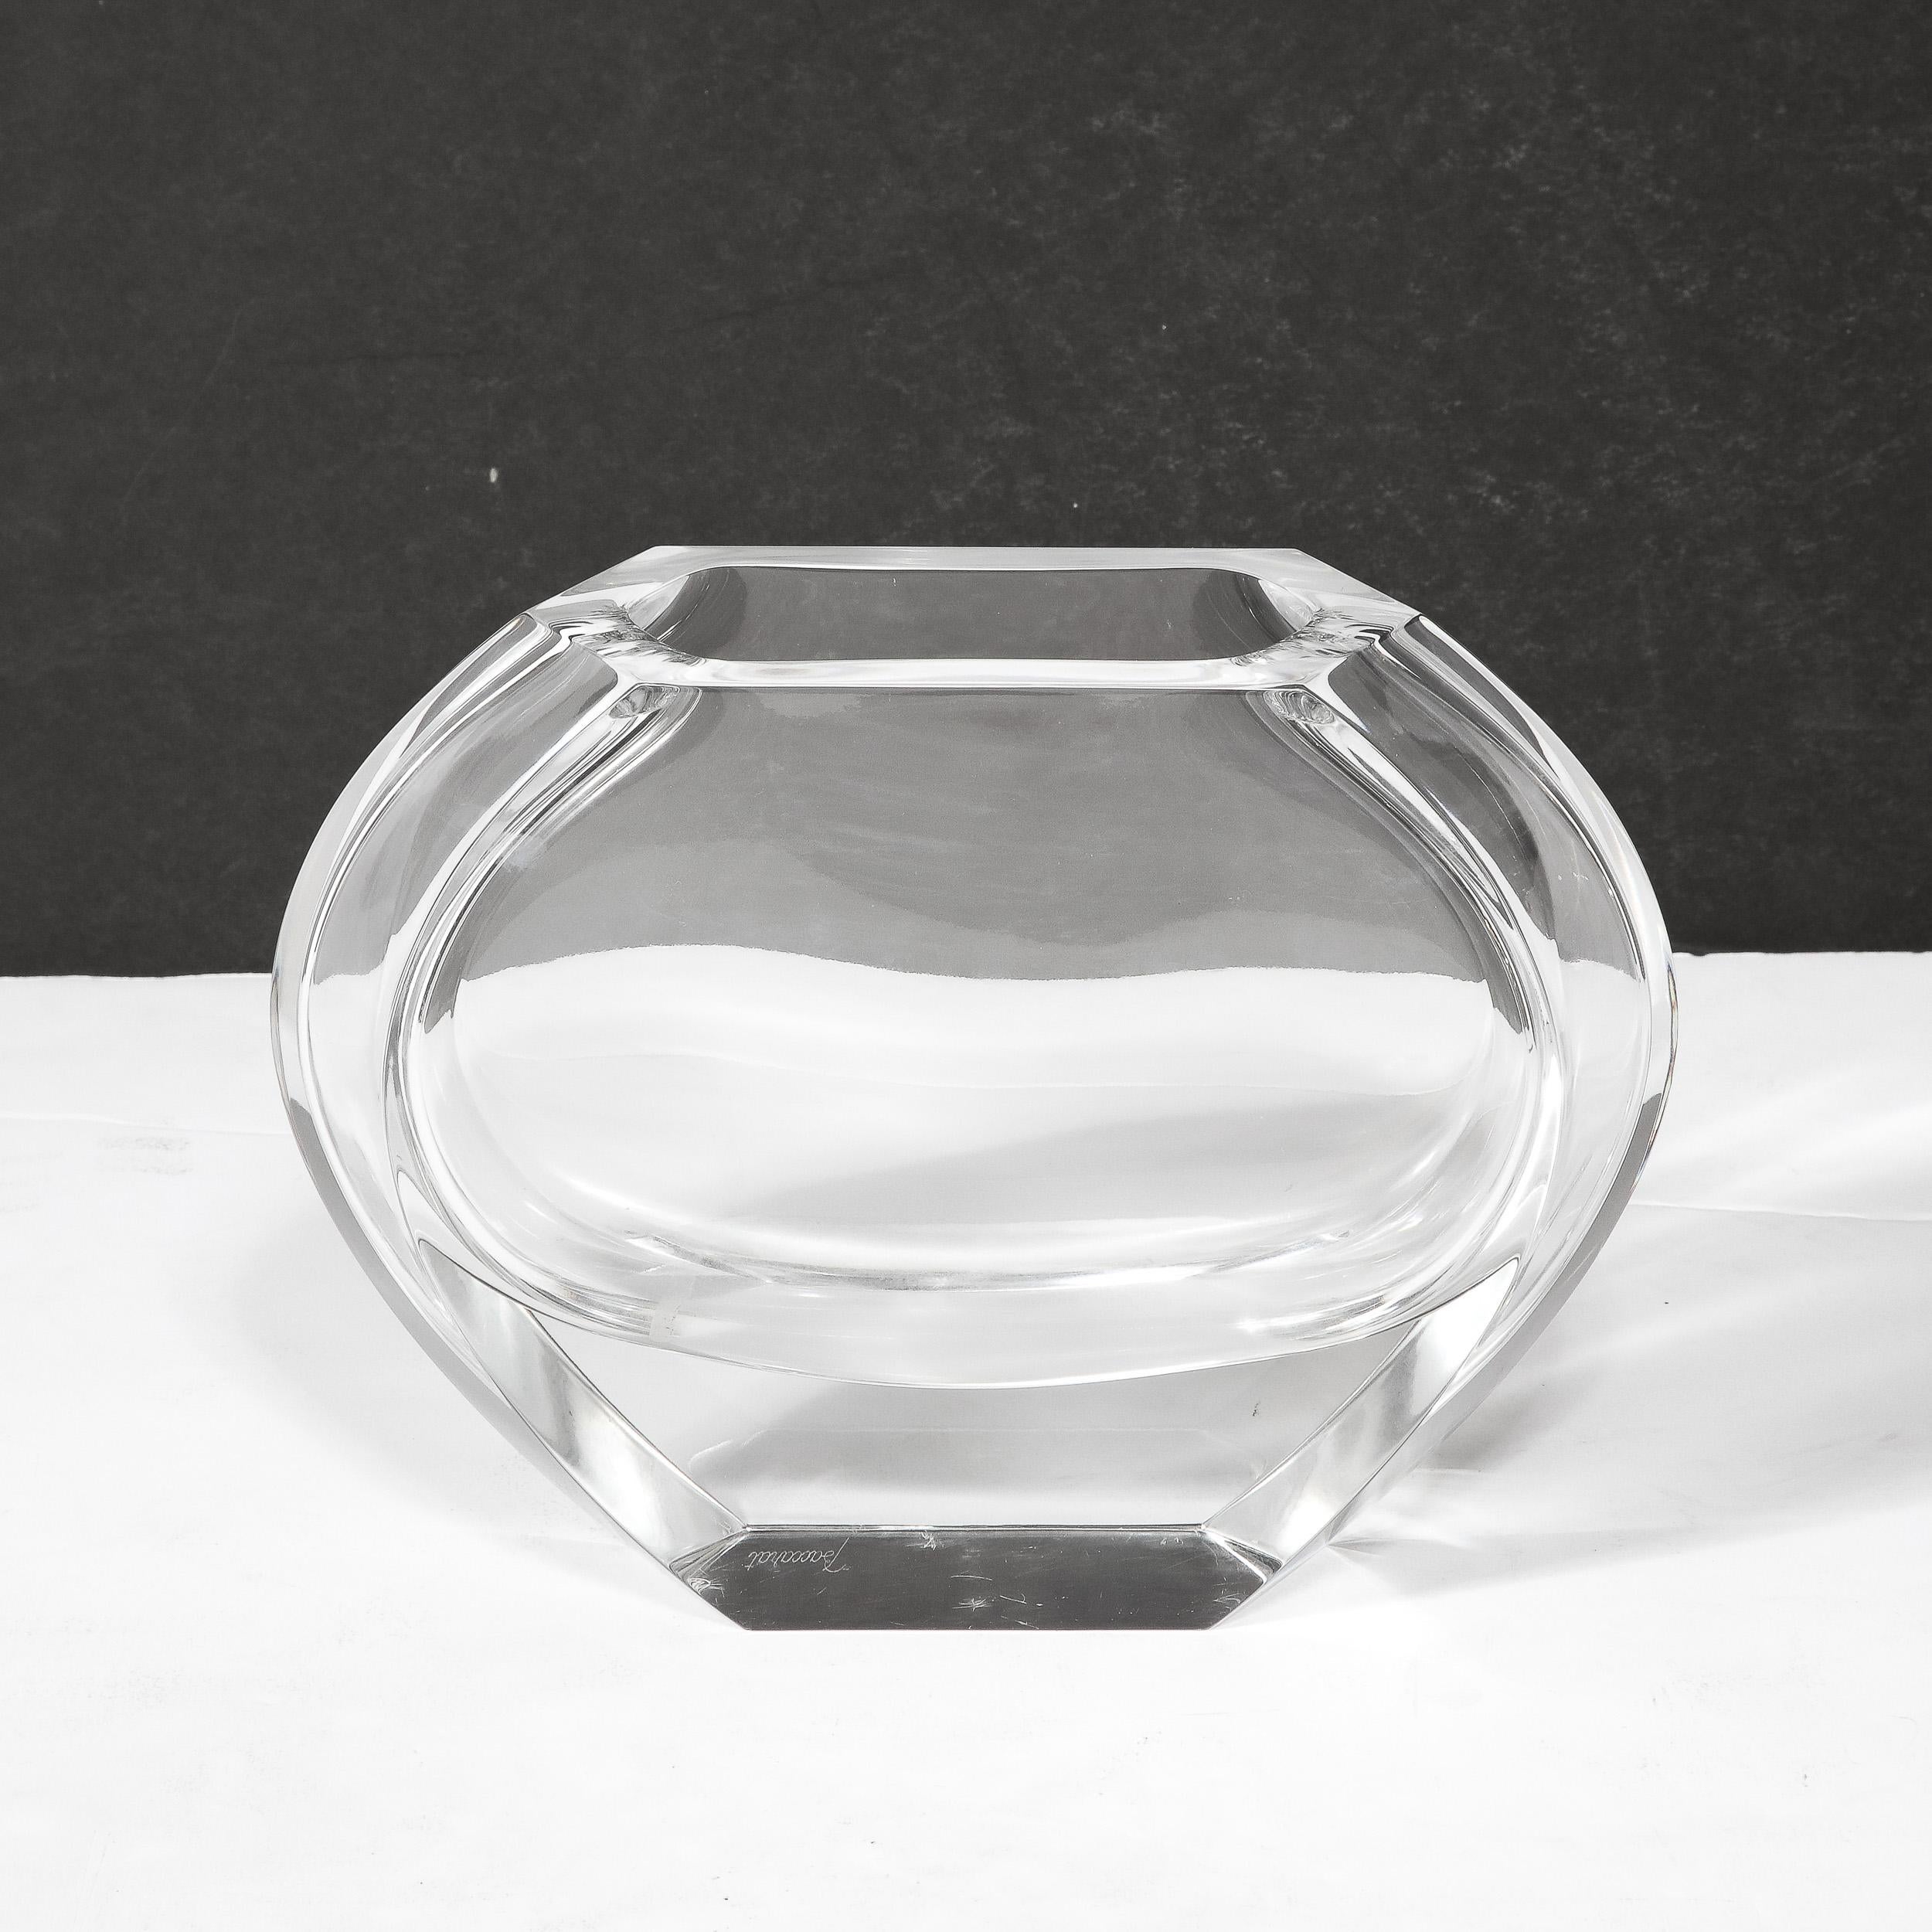 Ce vase en cristal moderniste du milieu du siècle, fabriqué par le célèbre fabricant de verre Baccarat, est originaire de France et date de 1960. Composé de parois de cristal transparent qui mènent à une base sensiblement épaisse et prismatique, les